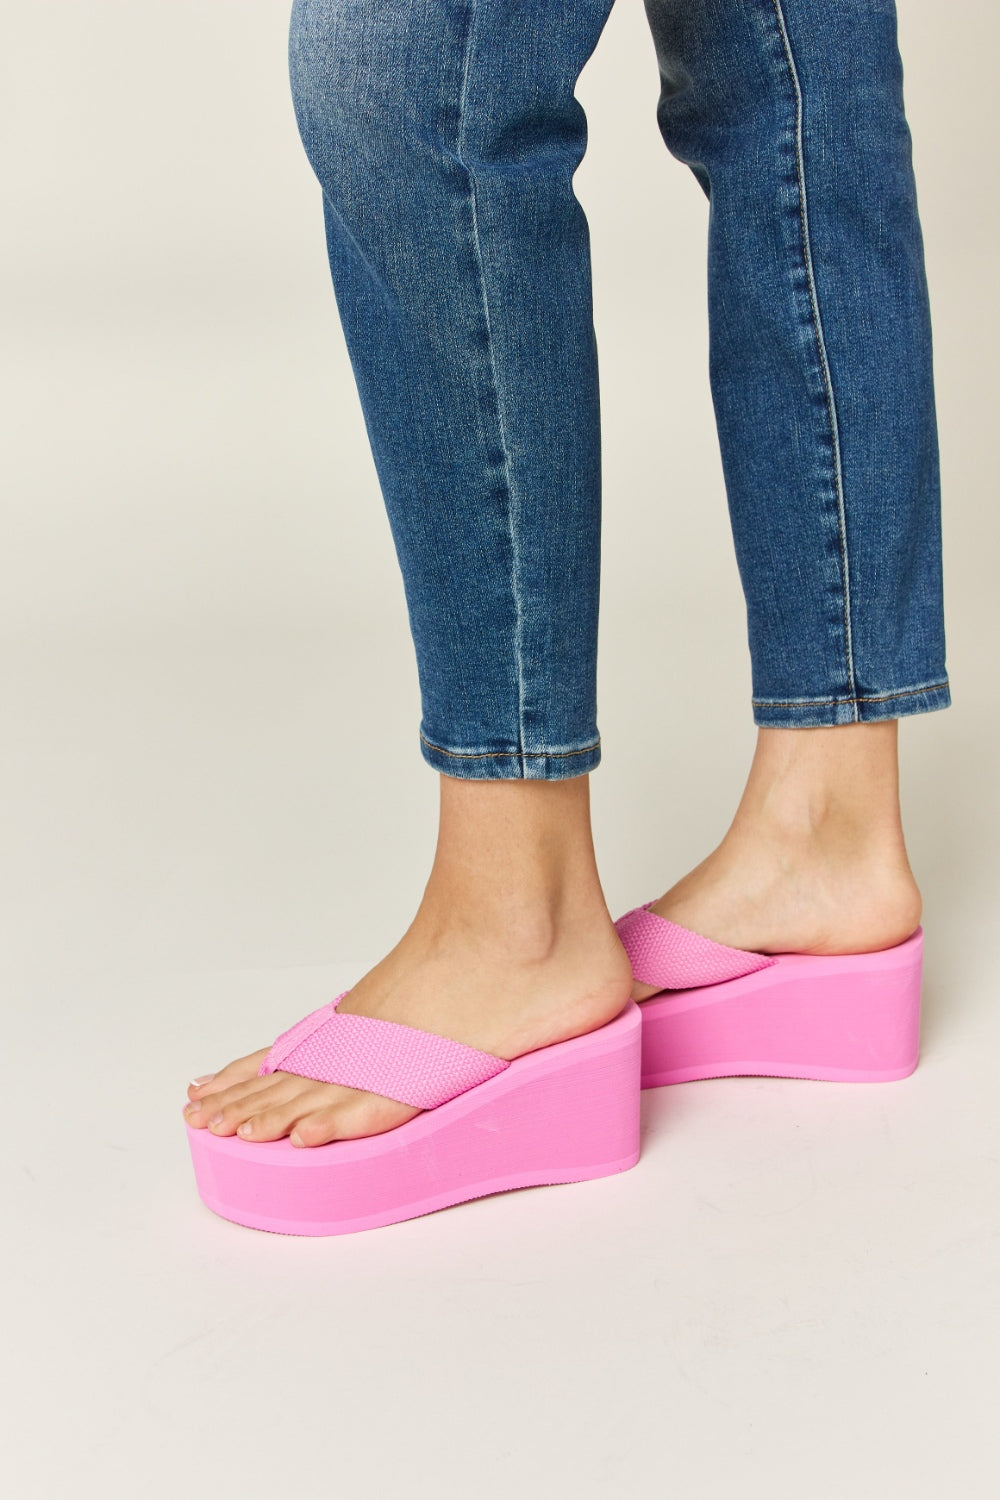 DIVA Open Toe Platform Wedge Sandals